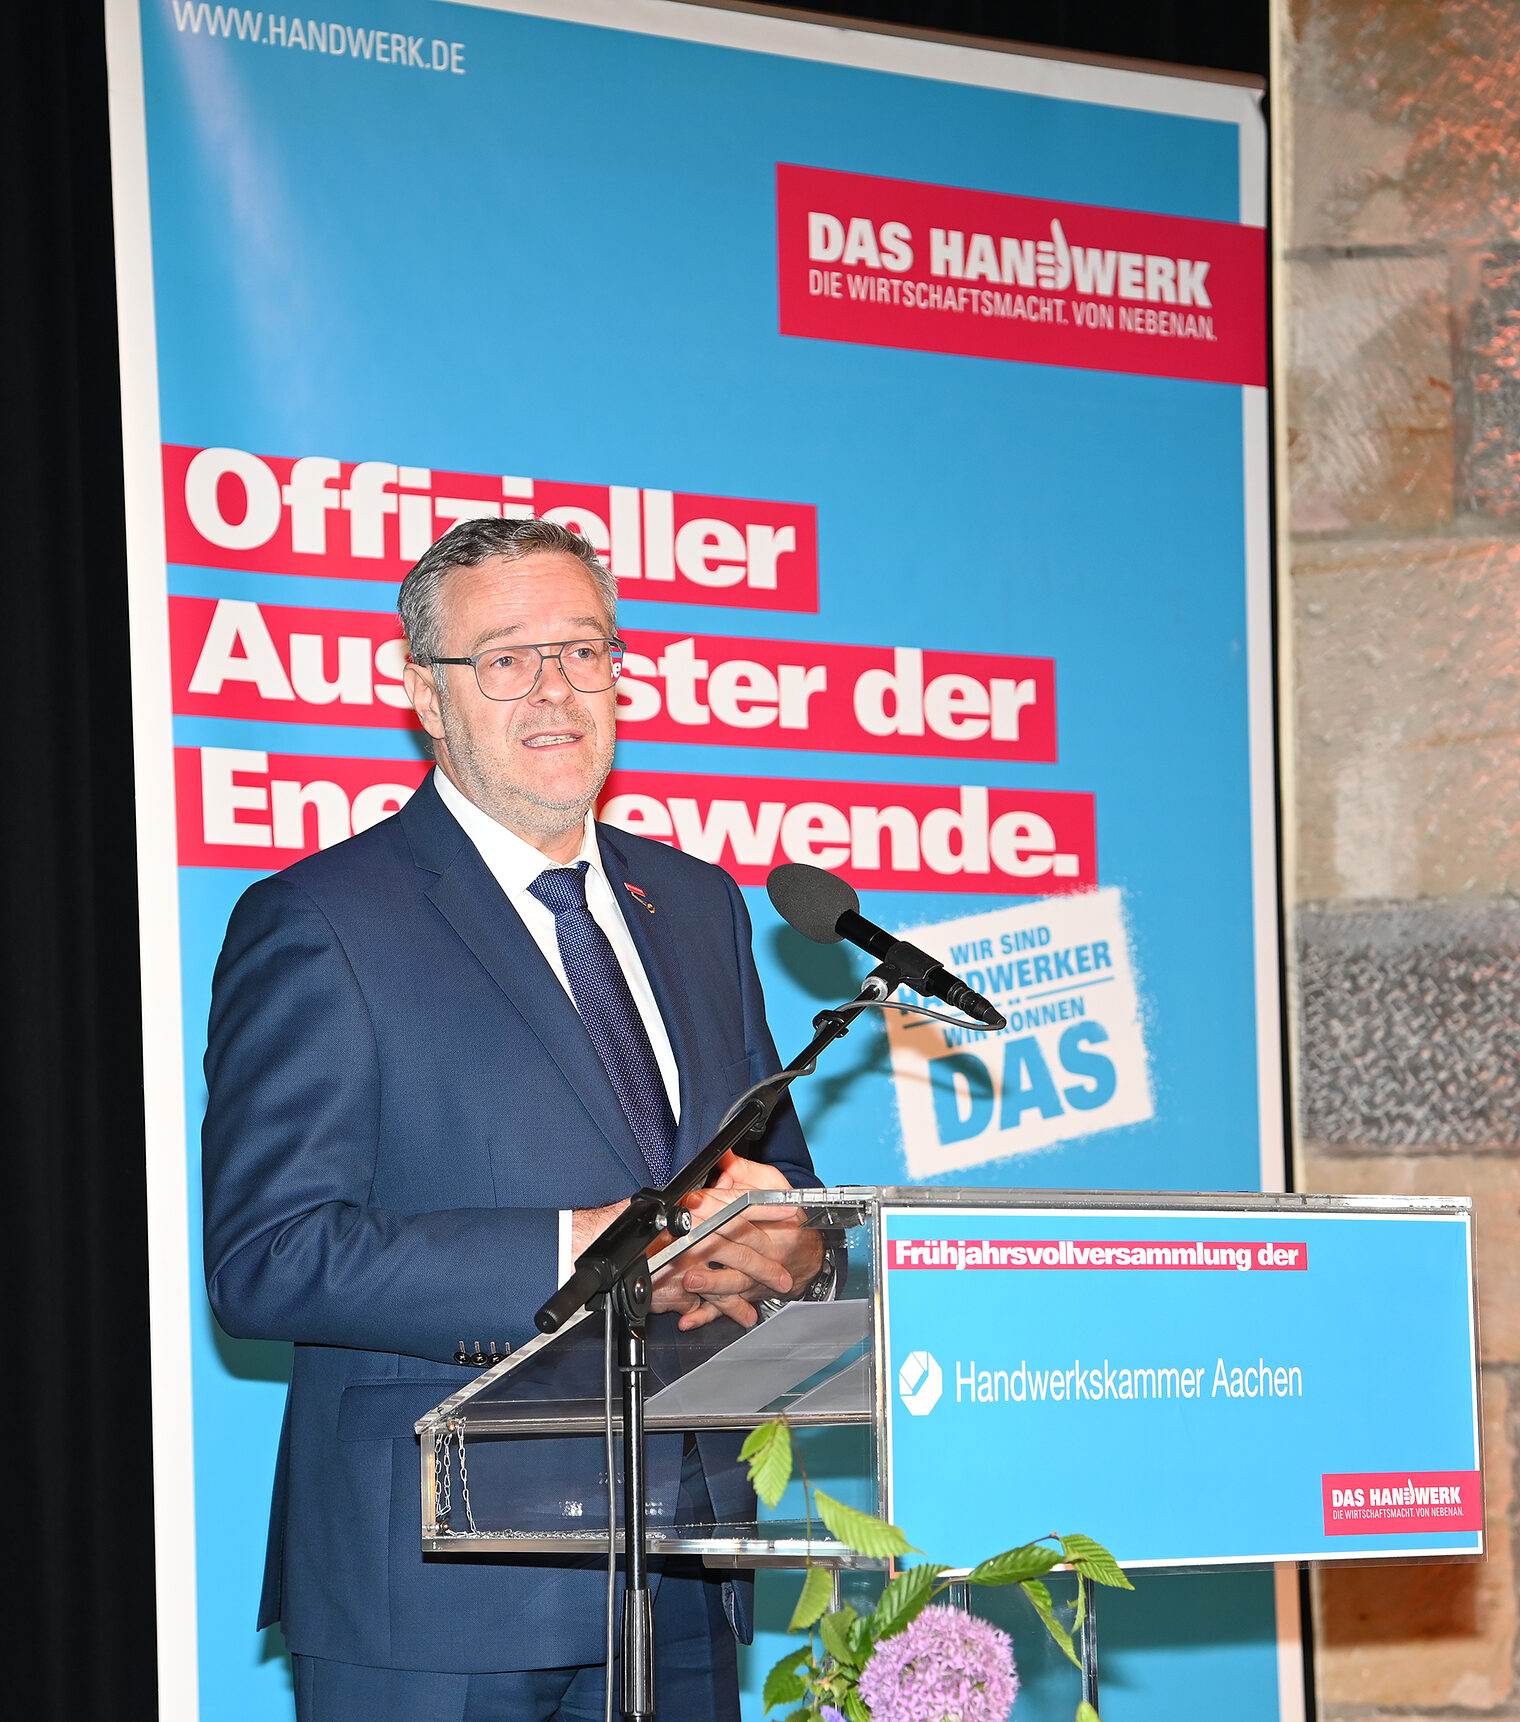 Frühjahrsvollversammlung der Handwerksxkammer Aachen Schlagwort(e): Jörg Dittrich, Präsident des Zentralverbandes des Deutschen Handwerks